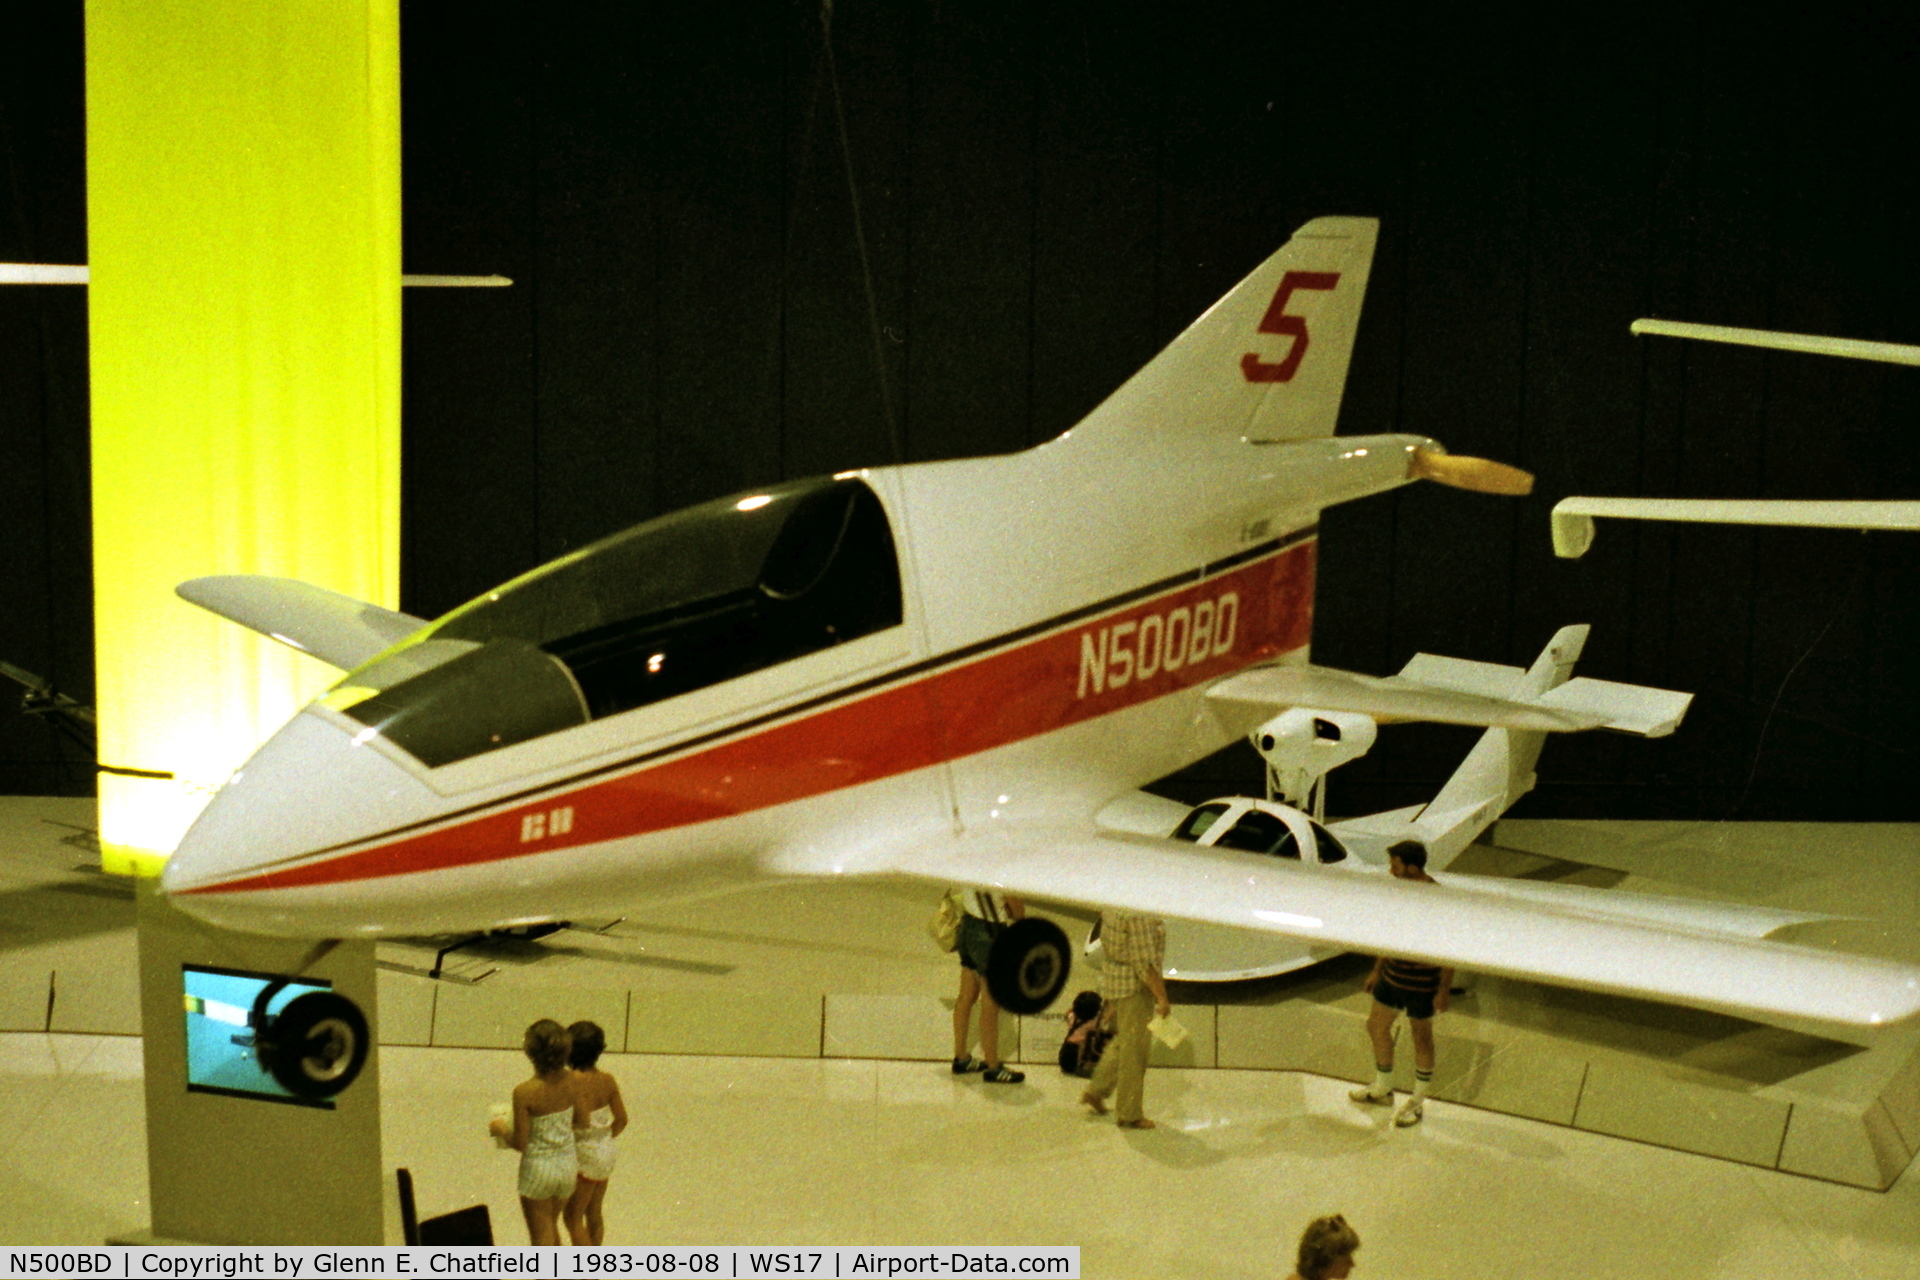 N500BD, 1971 Bede BD-5 C/N 1 (N500BD), At the EAA Museum